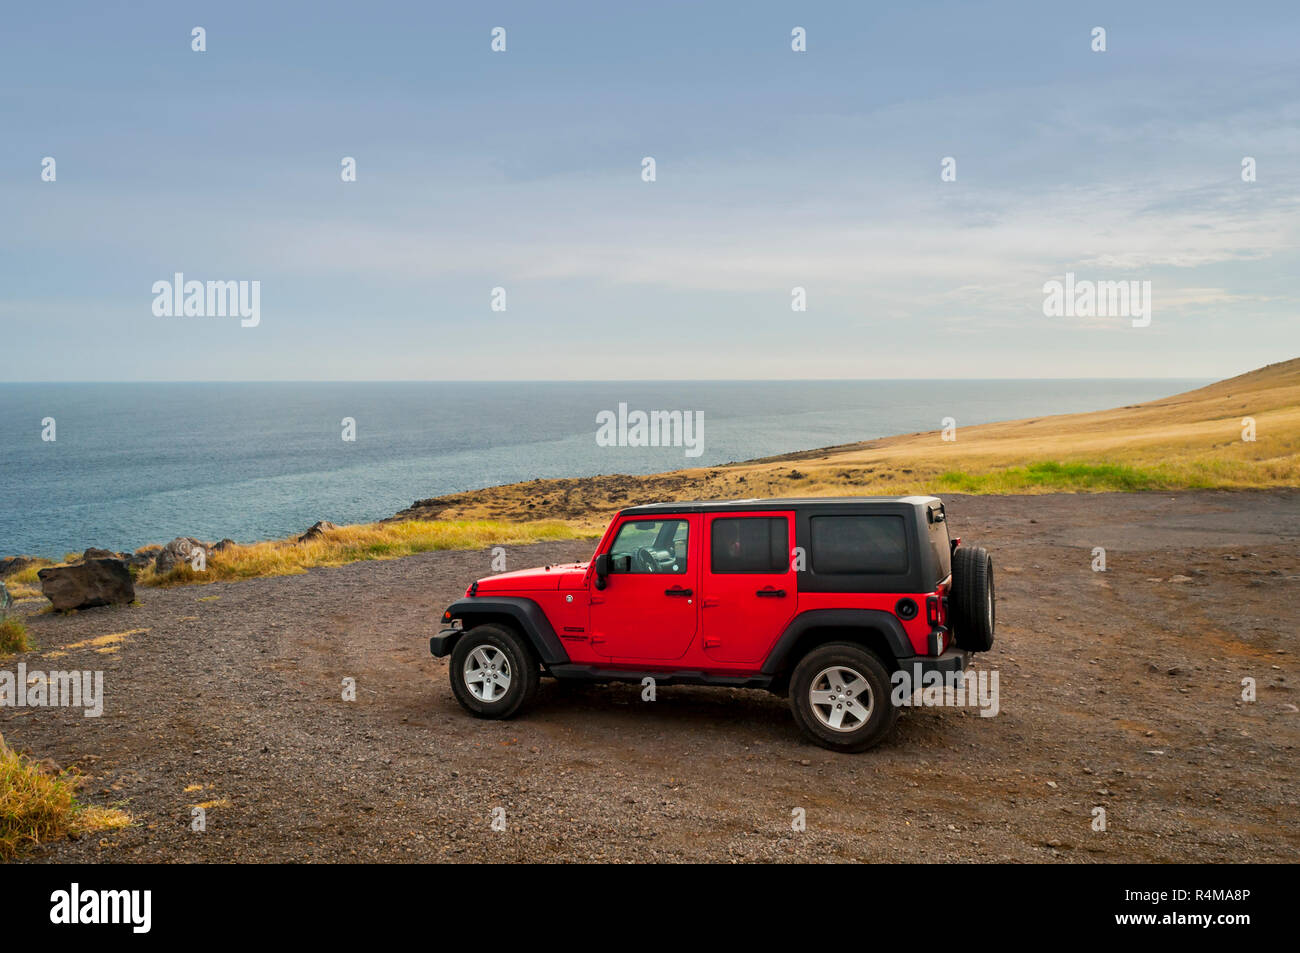 Une Jeep rouge stationnée sur la rive sud de Maui, Hawaii. La rive sud est relativement peu développé, avec peu d'infrastructures touristiques, mais beaucoup d'spectacula Banque D'Images